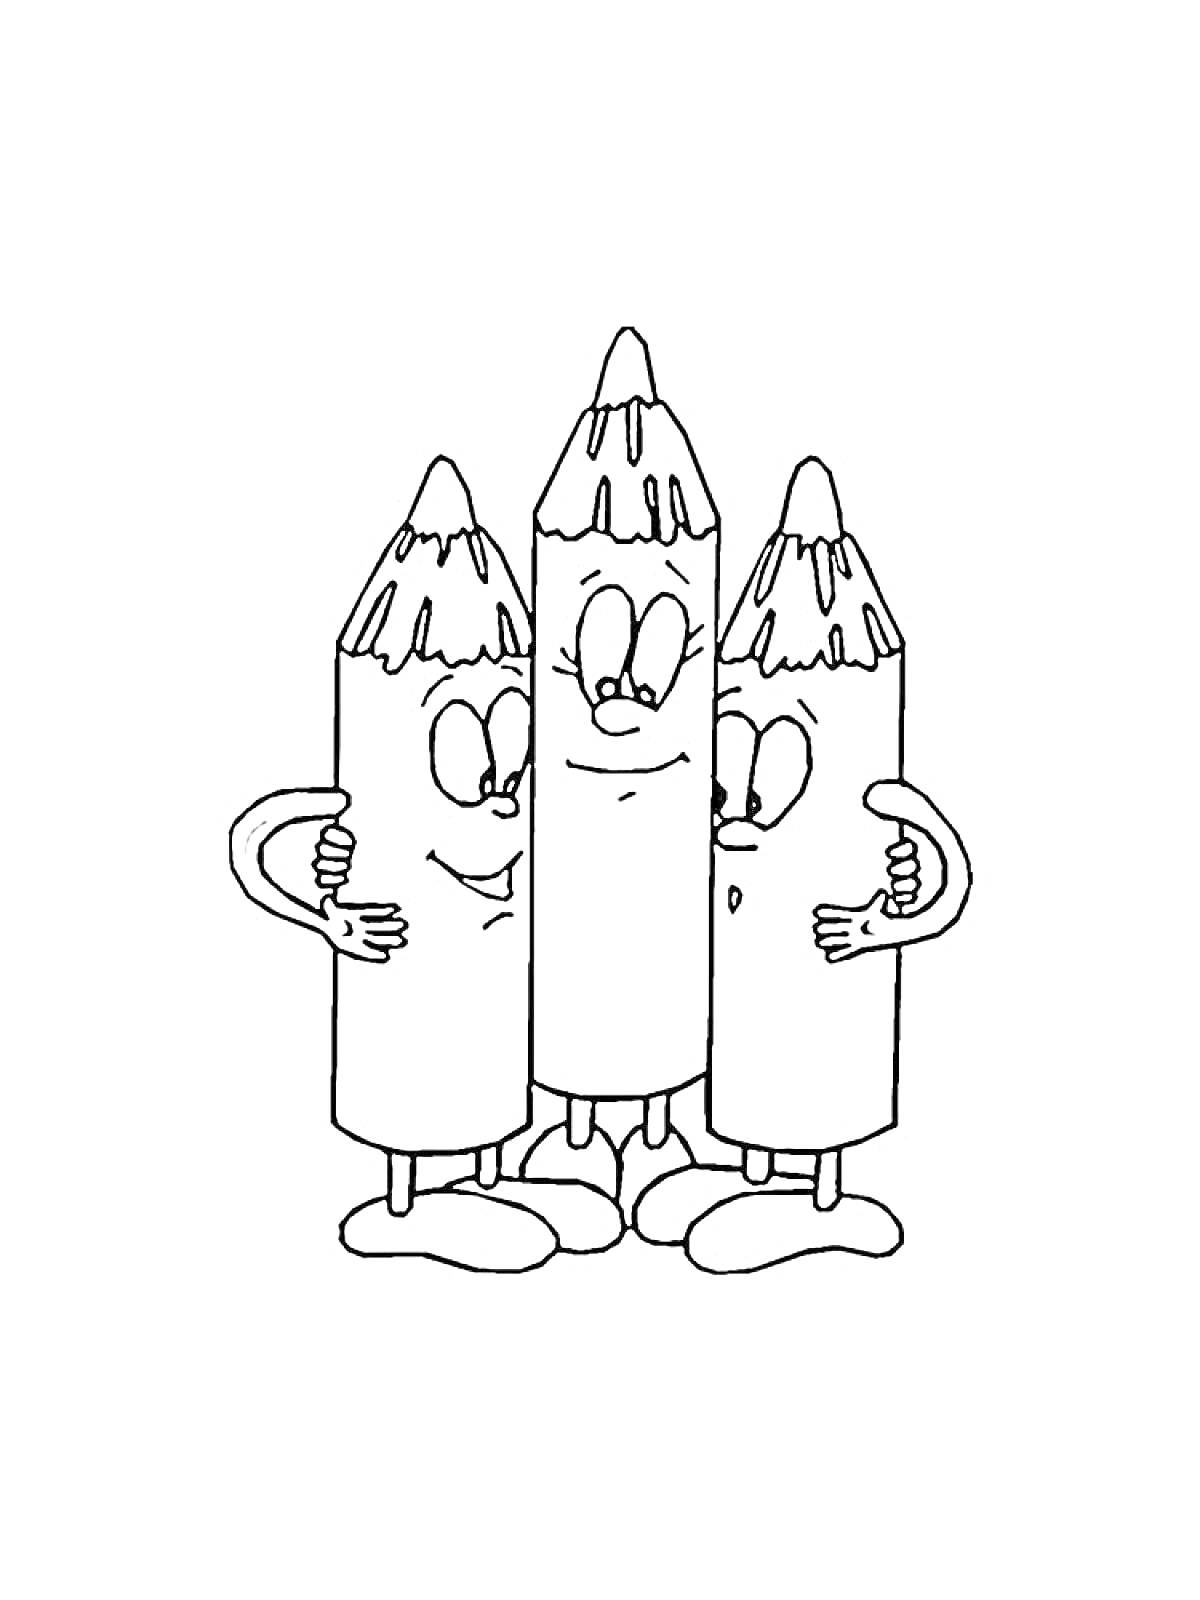 Раскраска Три улыбающихся карандаша с глазами, руками и ногами обнимаются